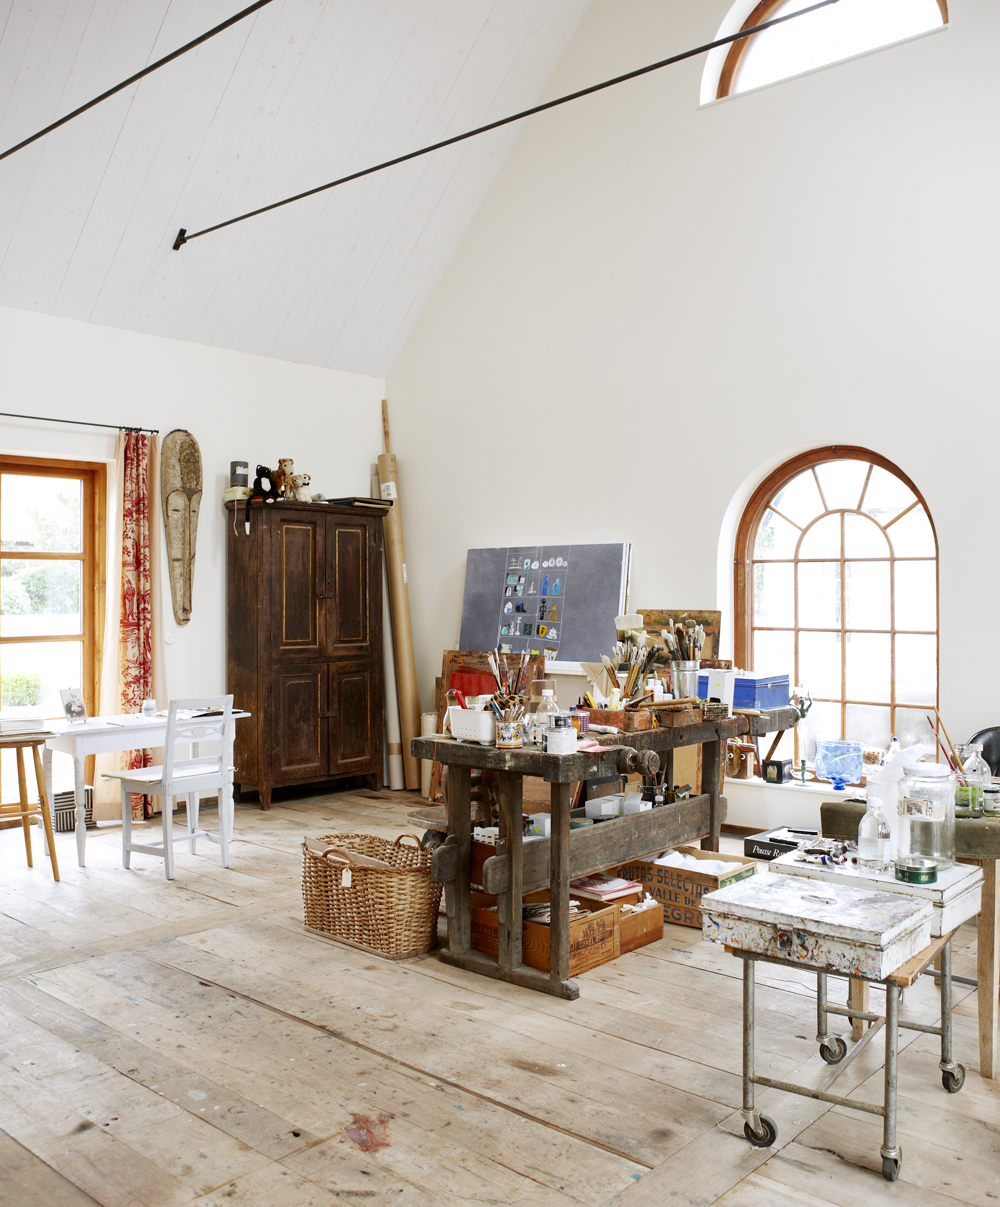 Madeleine Pyk's studio home studio